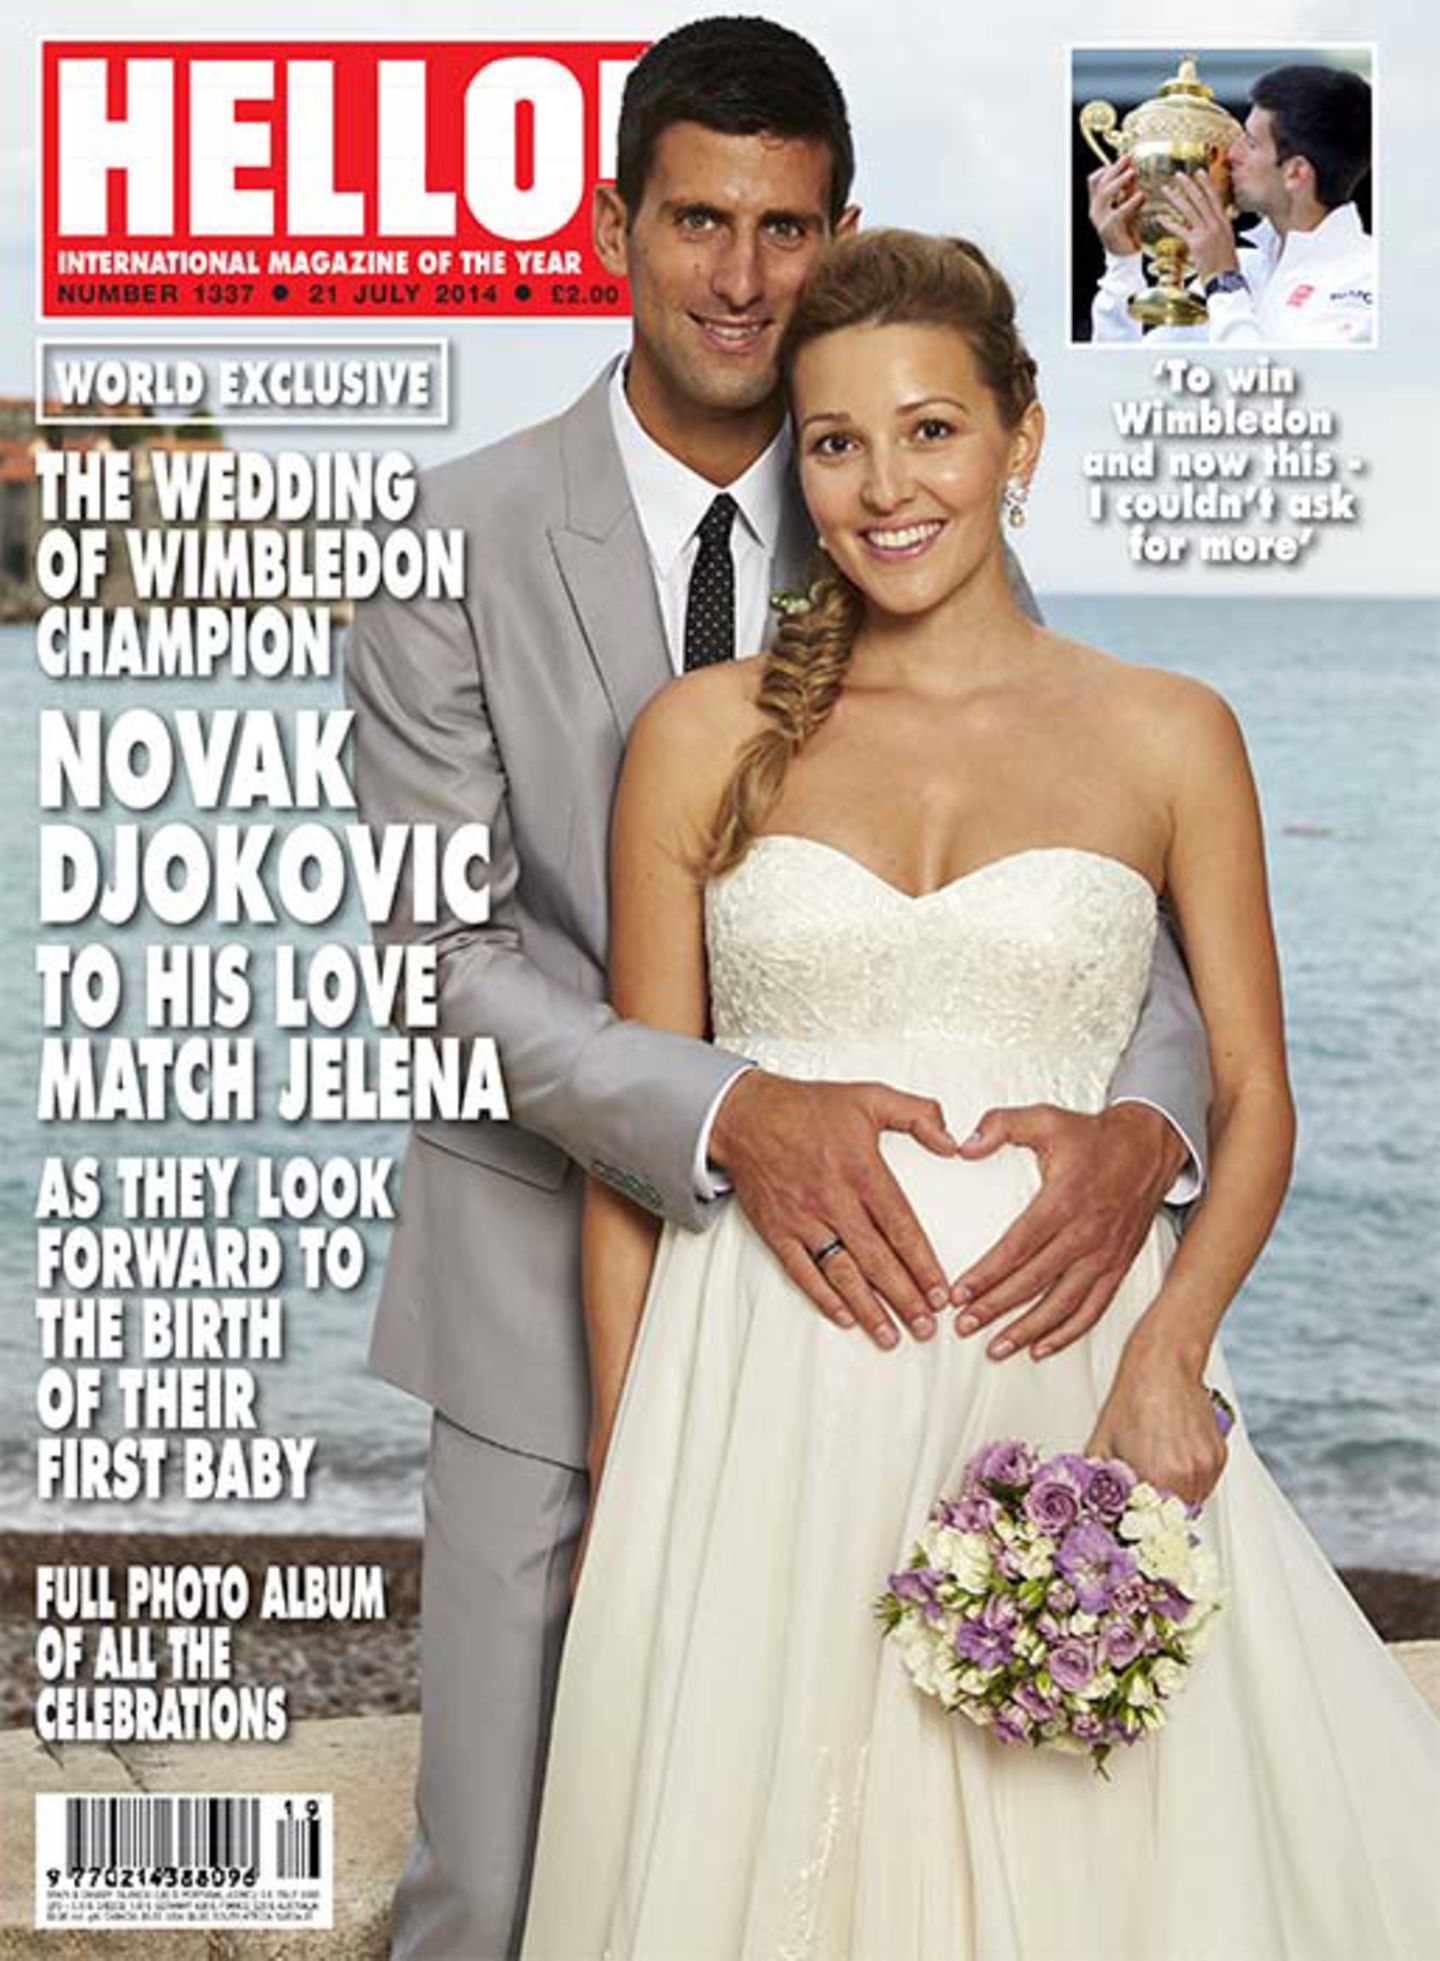 10. Juli 2014:  Nur wenige Tage nach seinem Wimbledon-Sieg hat Novak Djokovic seiner schwangeren Verlobten Jelena Ristic in Montenegro das Jawort gegeben.